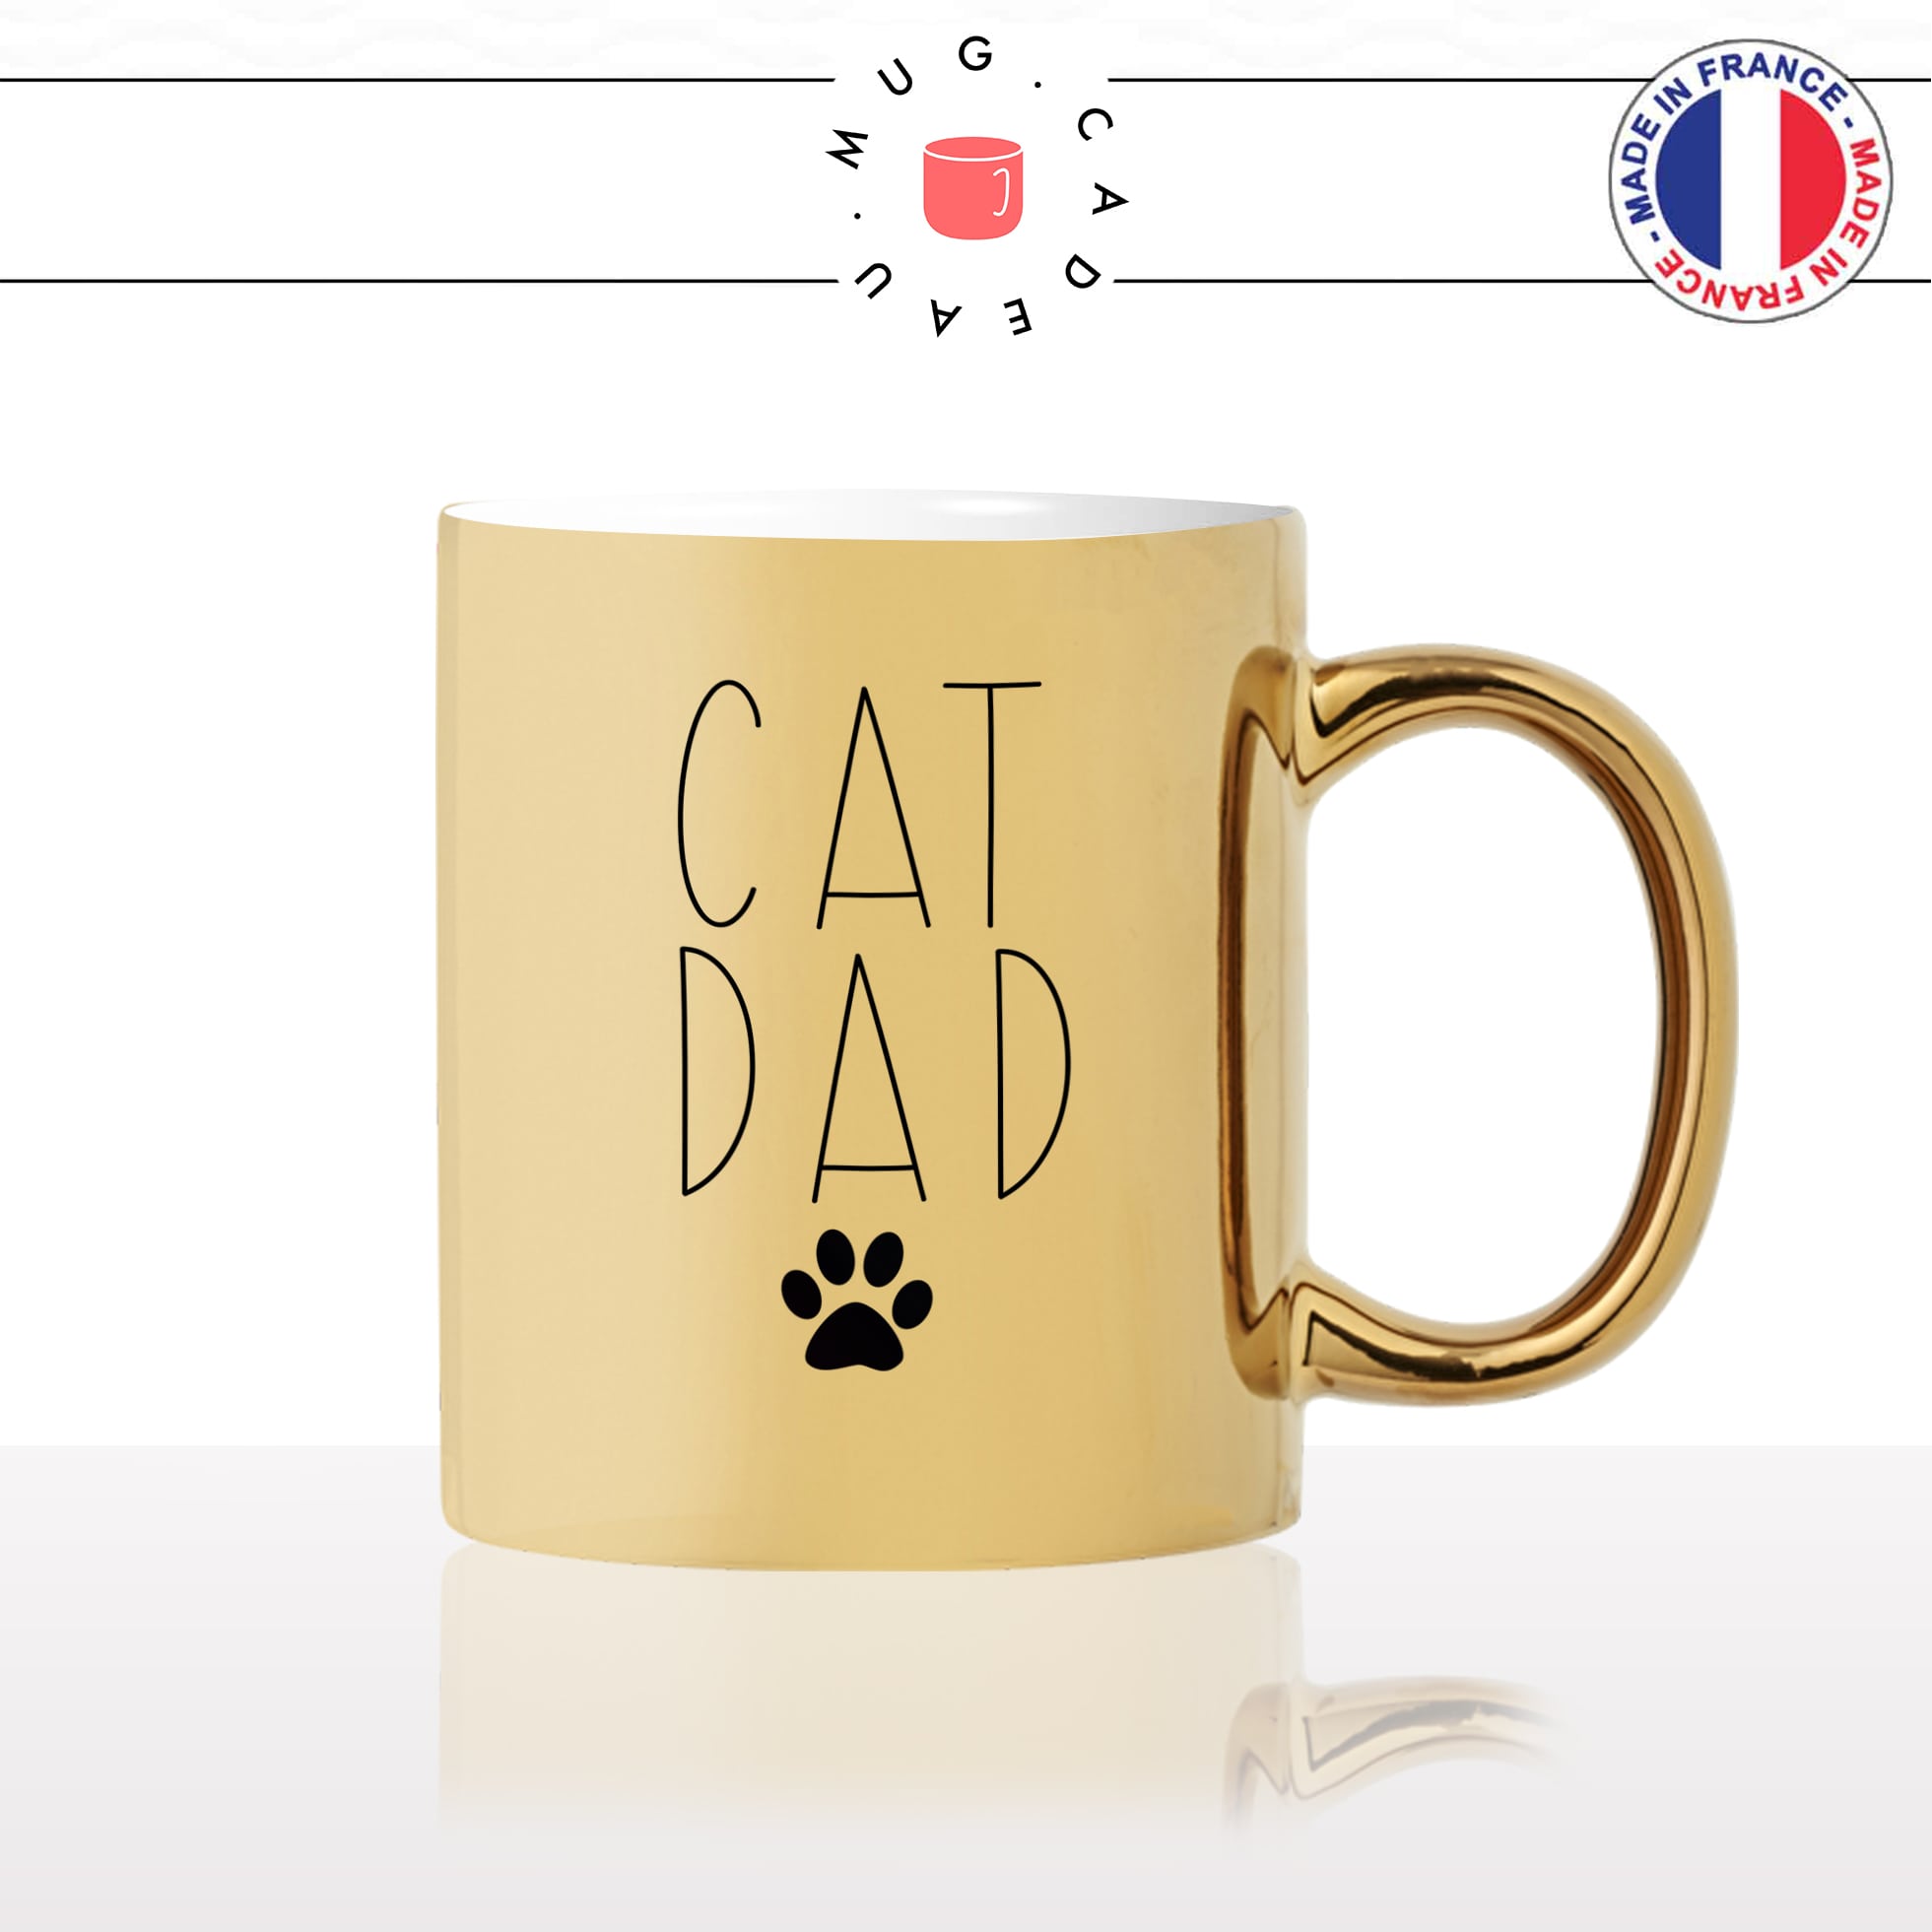 mug-tasse-or-doré-cat-dad-papa-chats-mignon-animal-chaton-dessin-noir-fun-café-thé-idée-cadeau-original-personnalisable-gold2-min